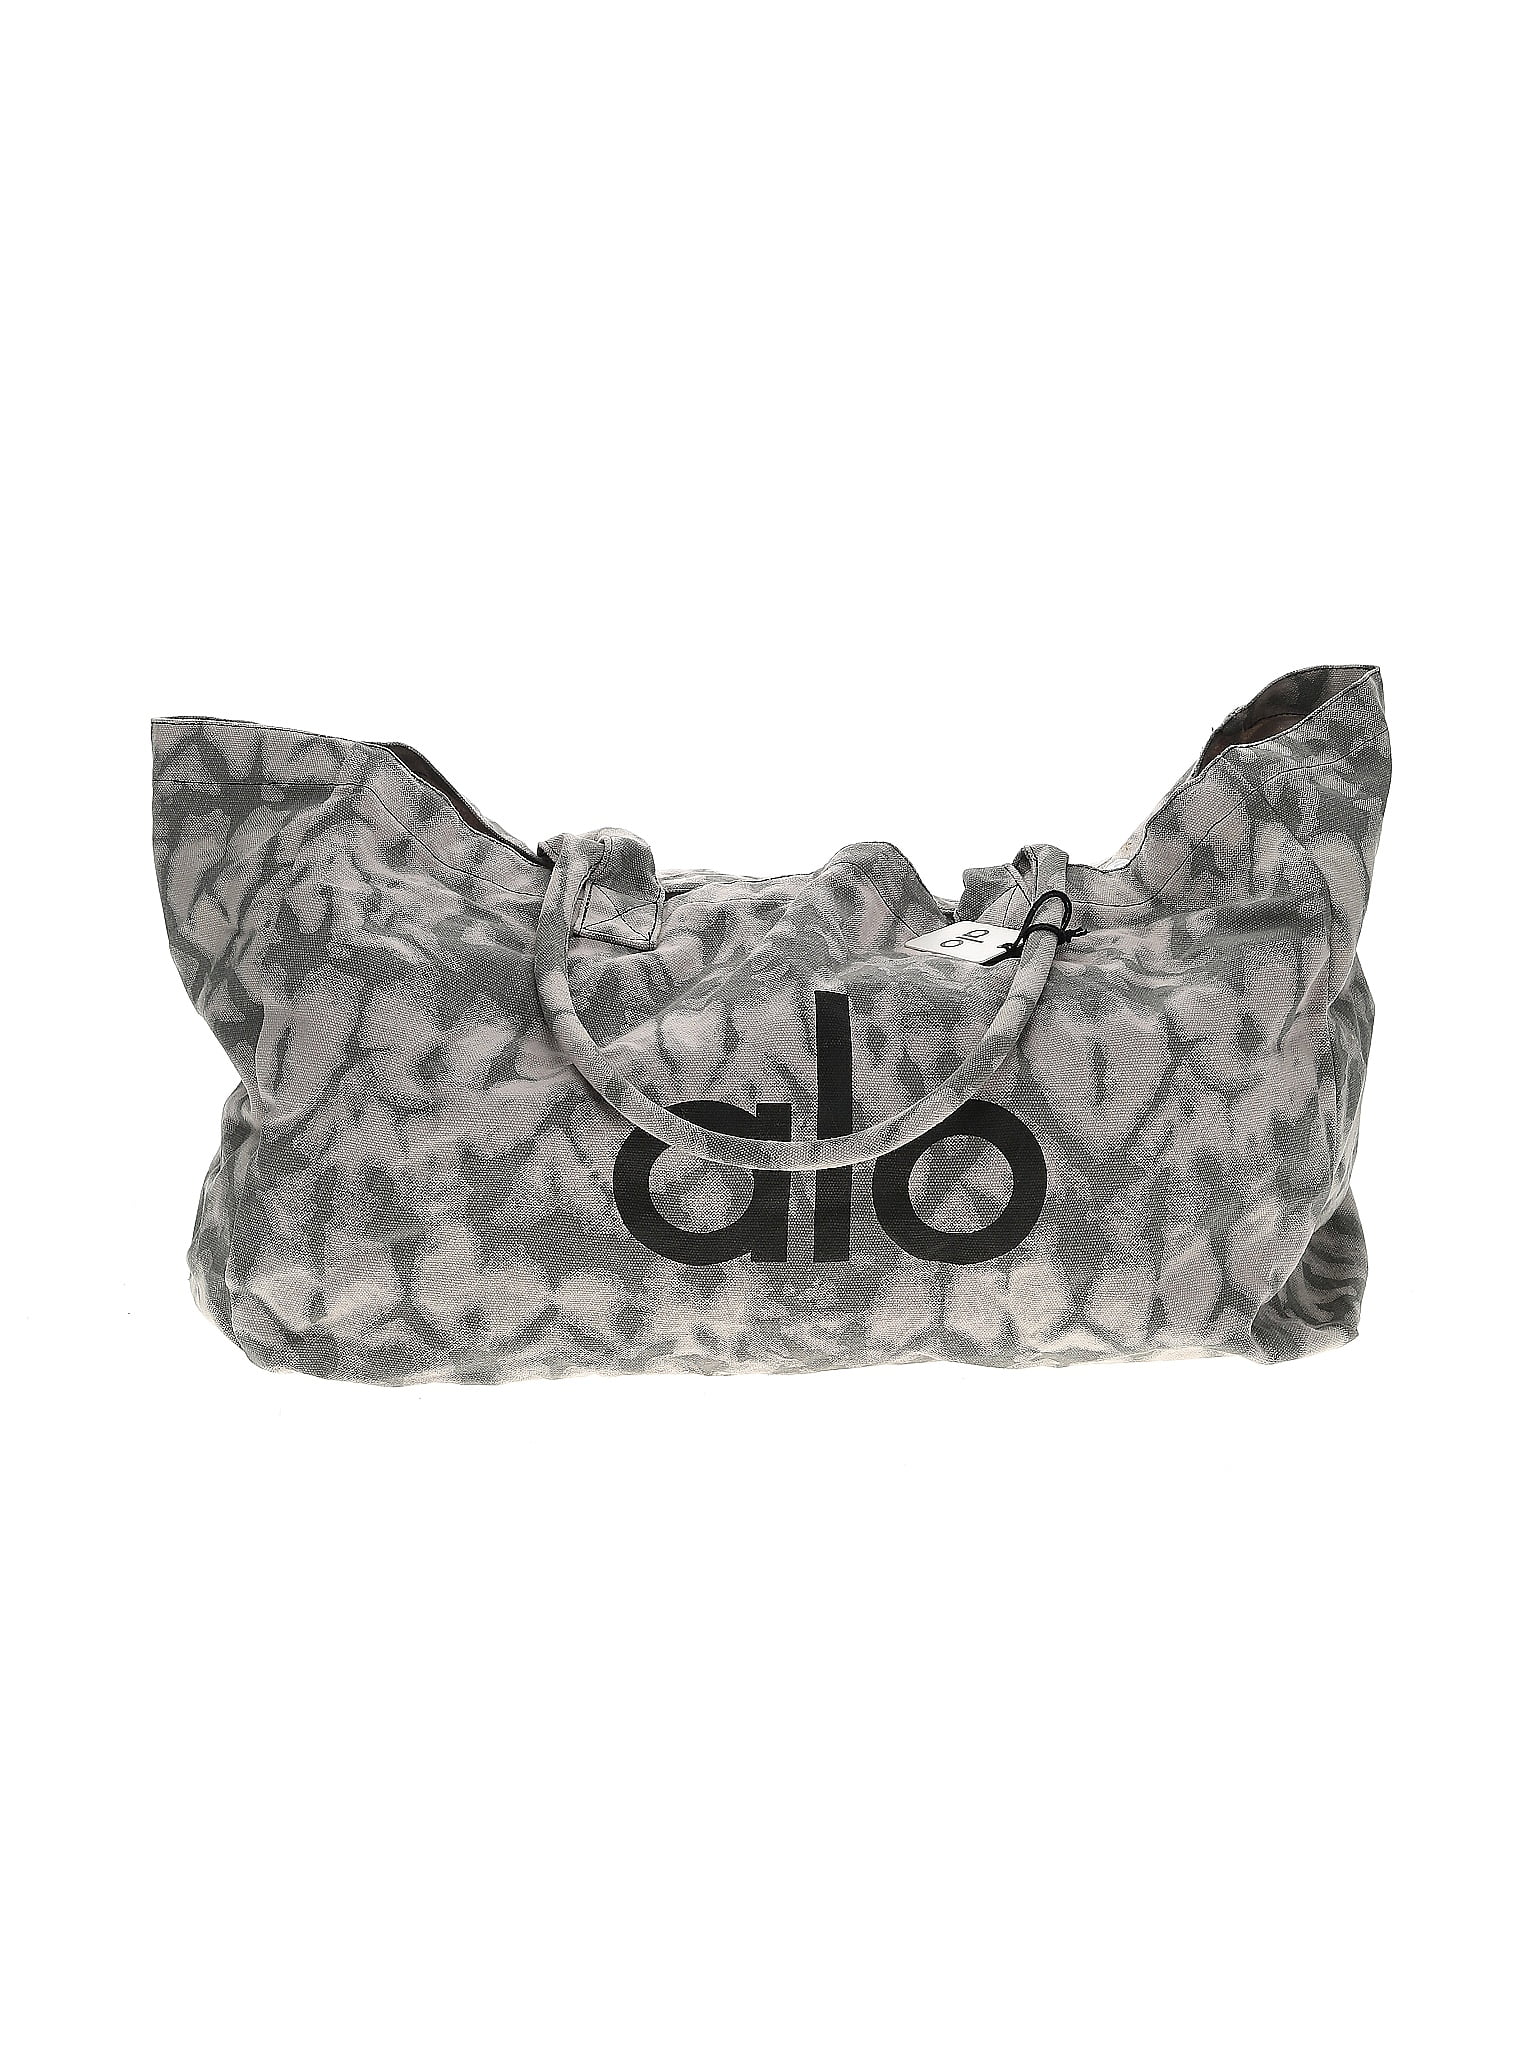 Alo Yoga 100% Cotton Gray Tote One Size - 67% off